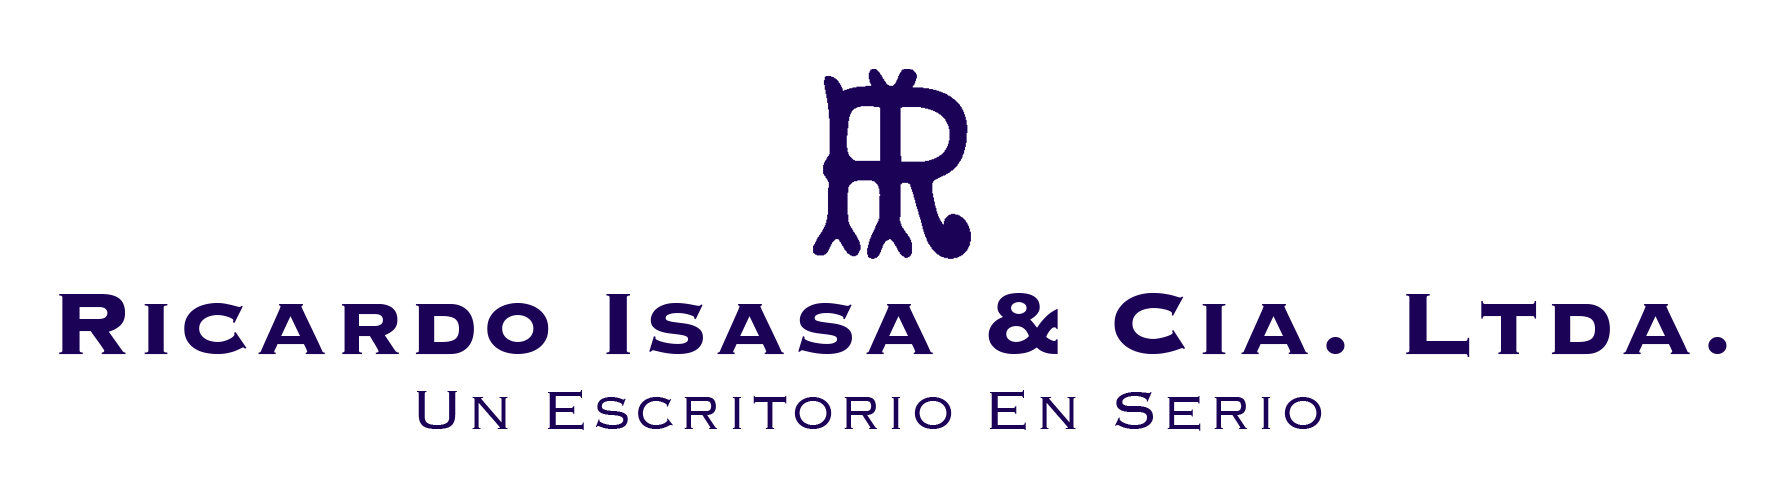 Logo Ricardo Isasa & Cía LTDA